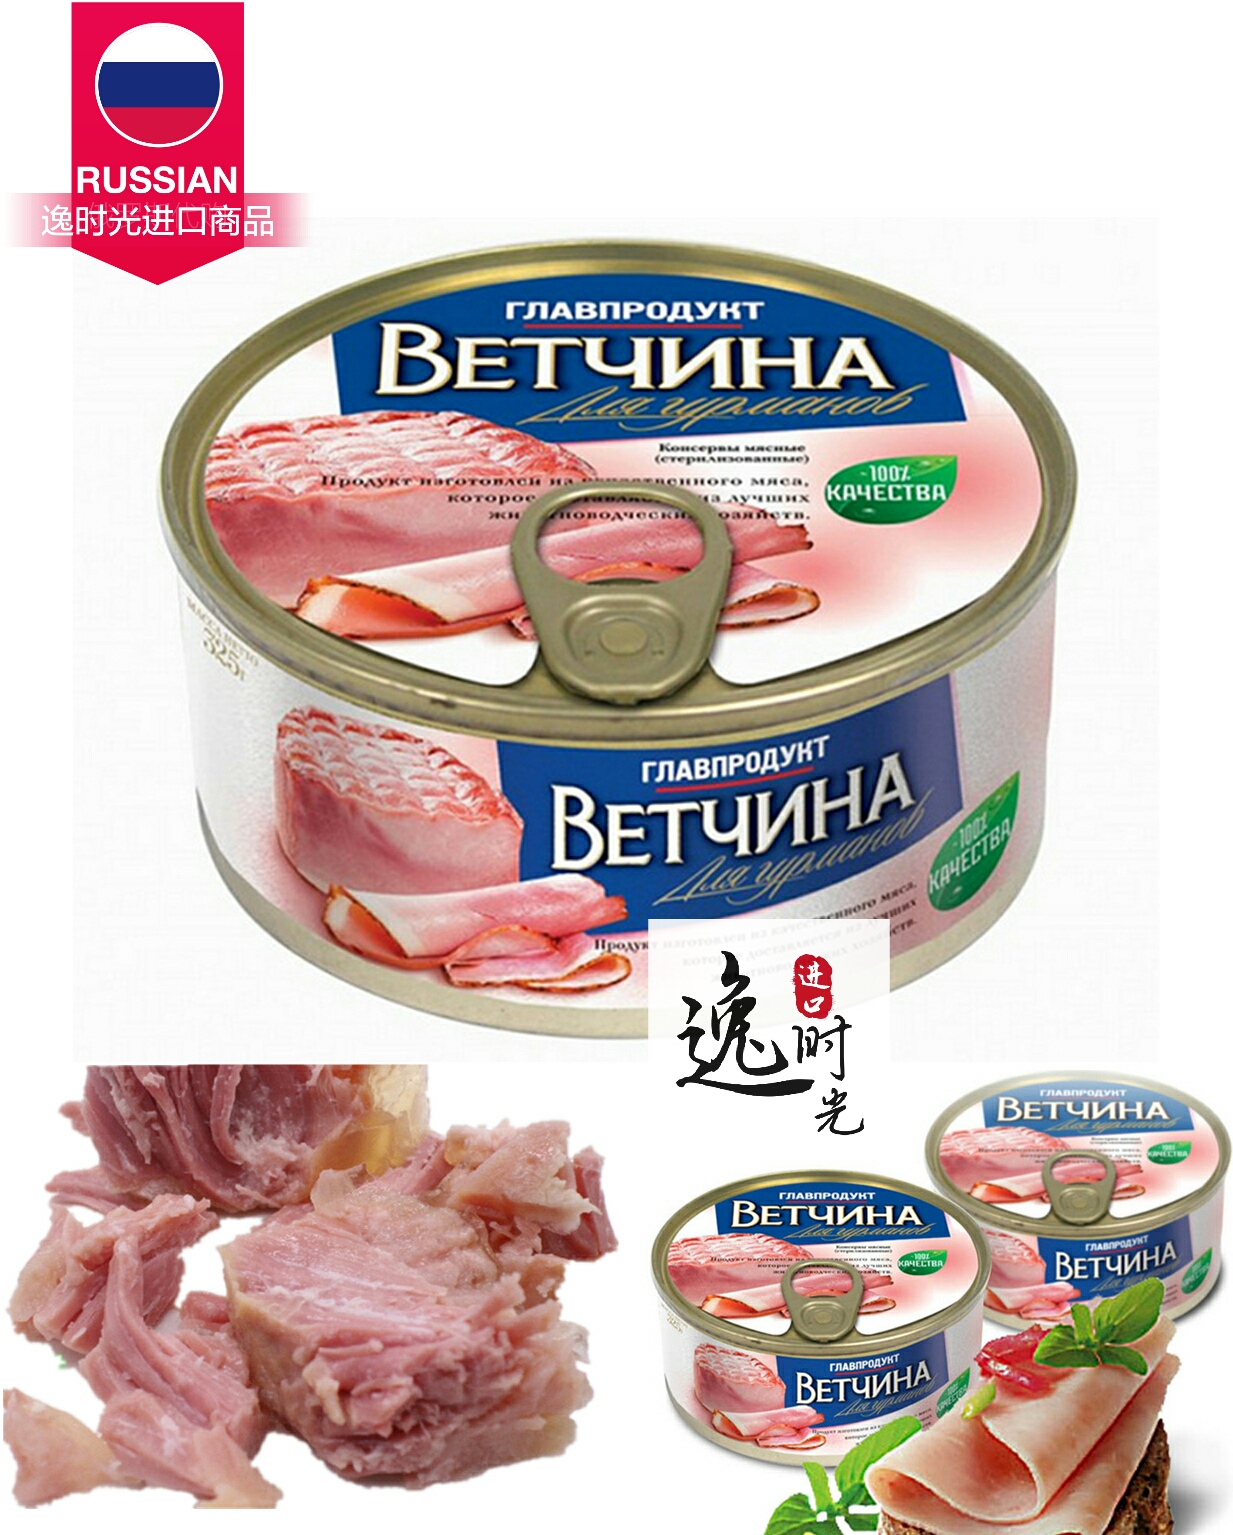 正品俄罗斯火腿午餐肉罐头纯肉丝即食户外早餐食品营养3罐包邮